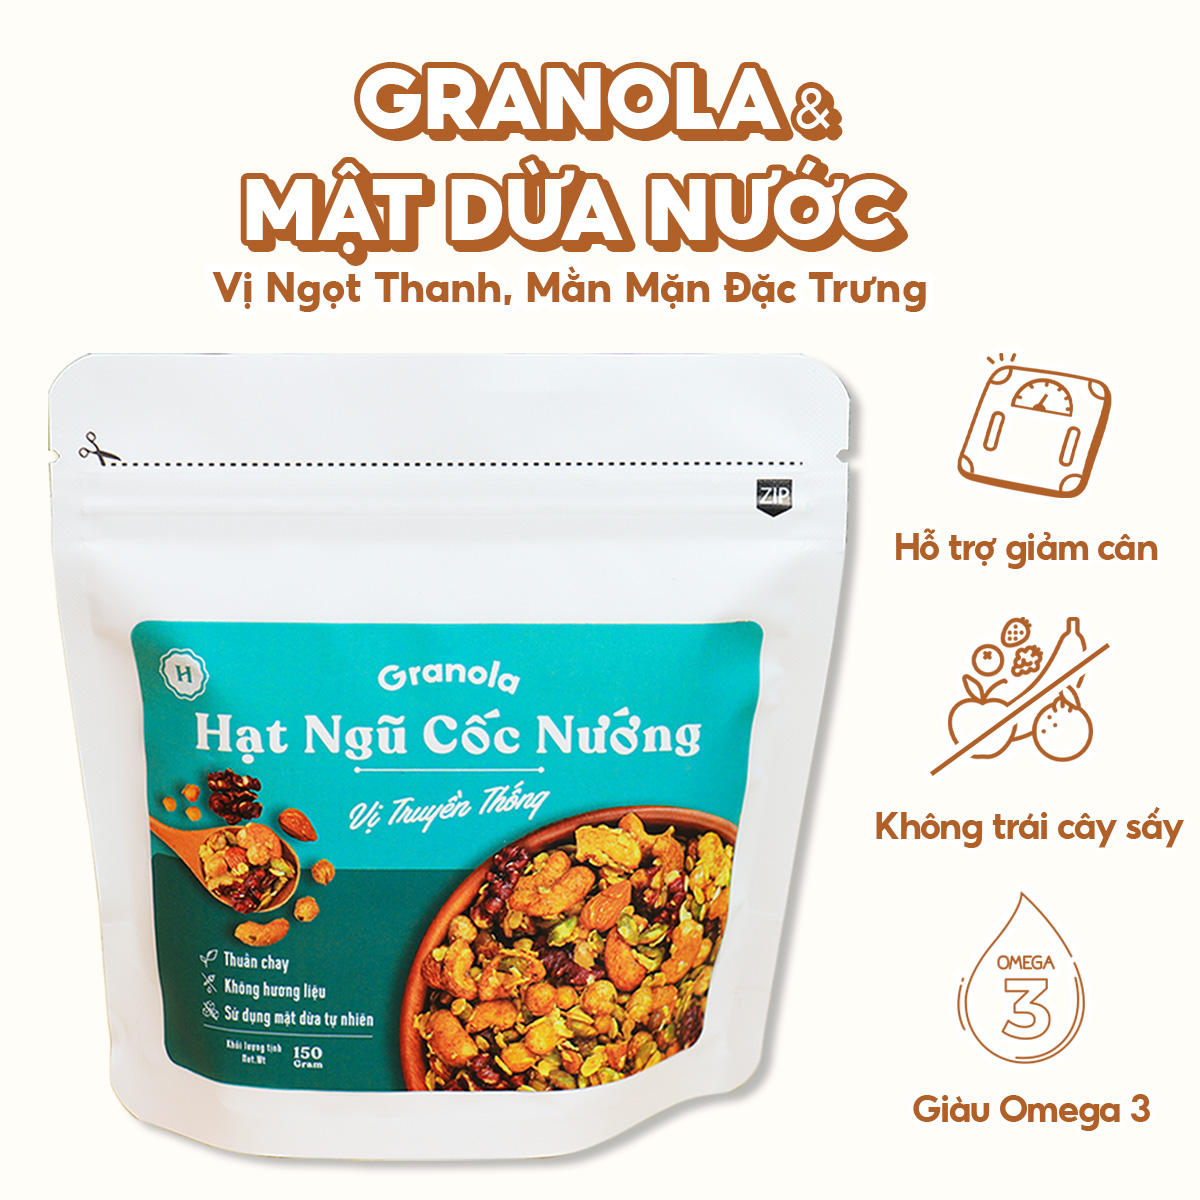 Granola nướng giòn tan - Vị truyền thống túi 400g - Dùng mật dừa nước, 0 trái cây sấy, GI thấp - Hạt ngũ cốc giảm cân - HeydayCacao